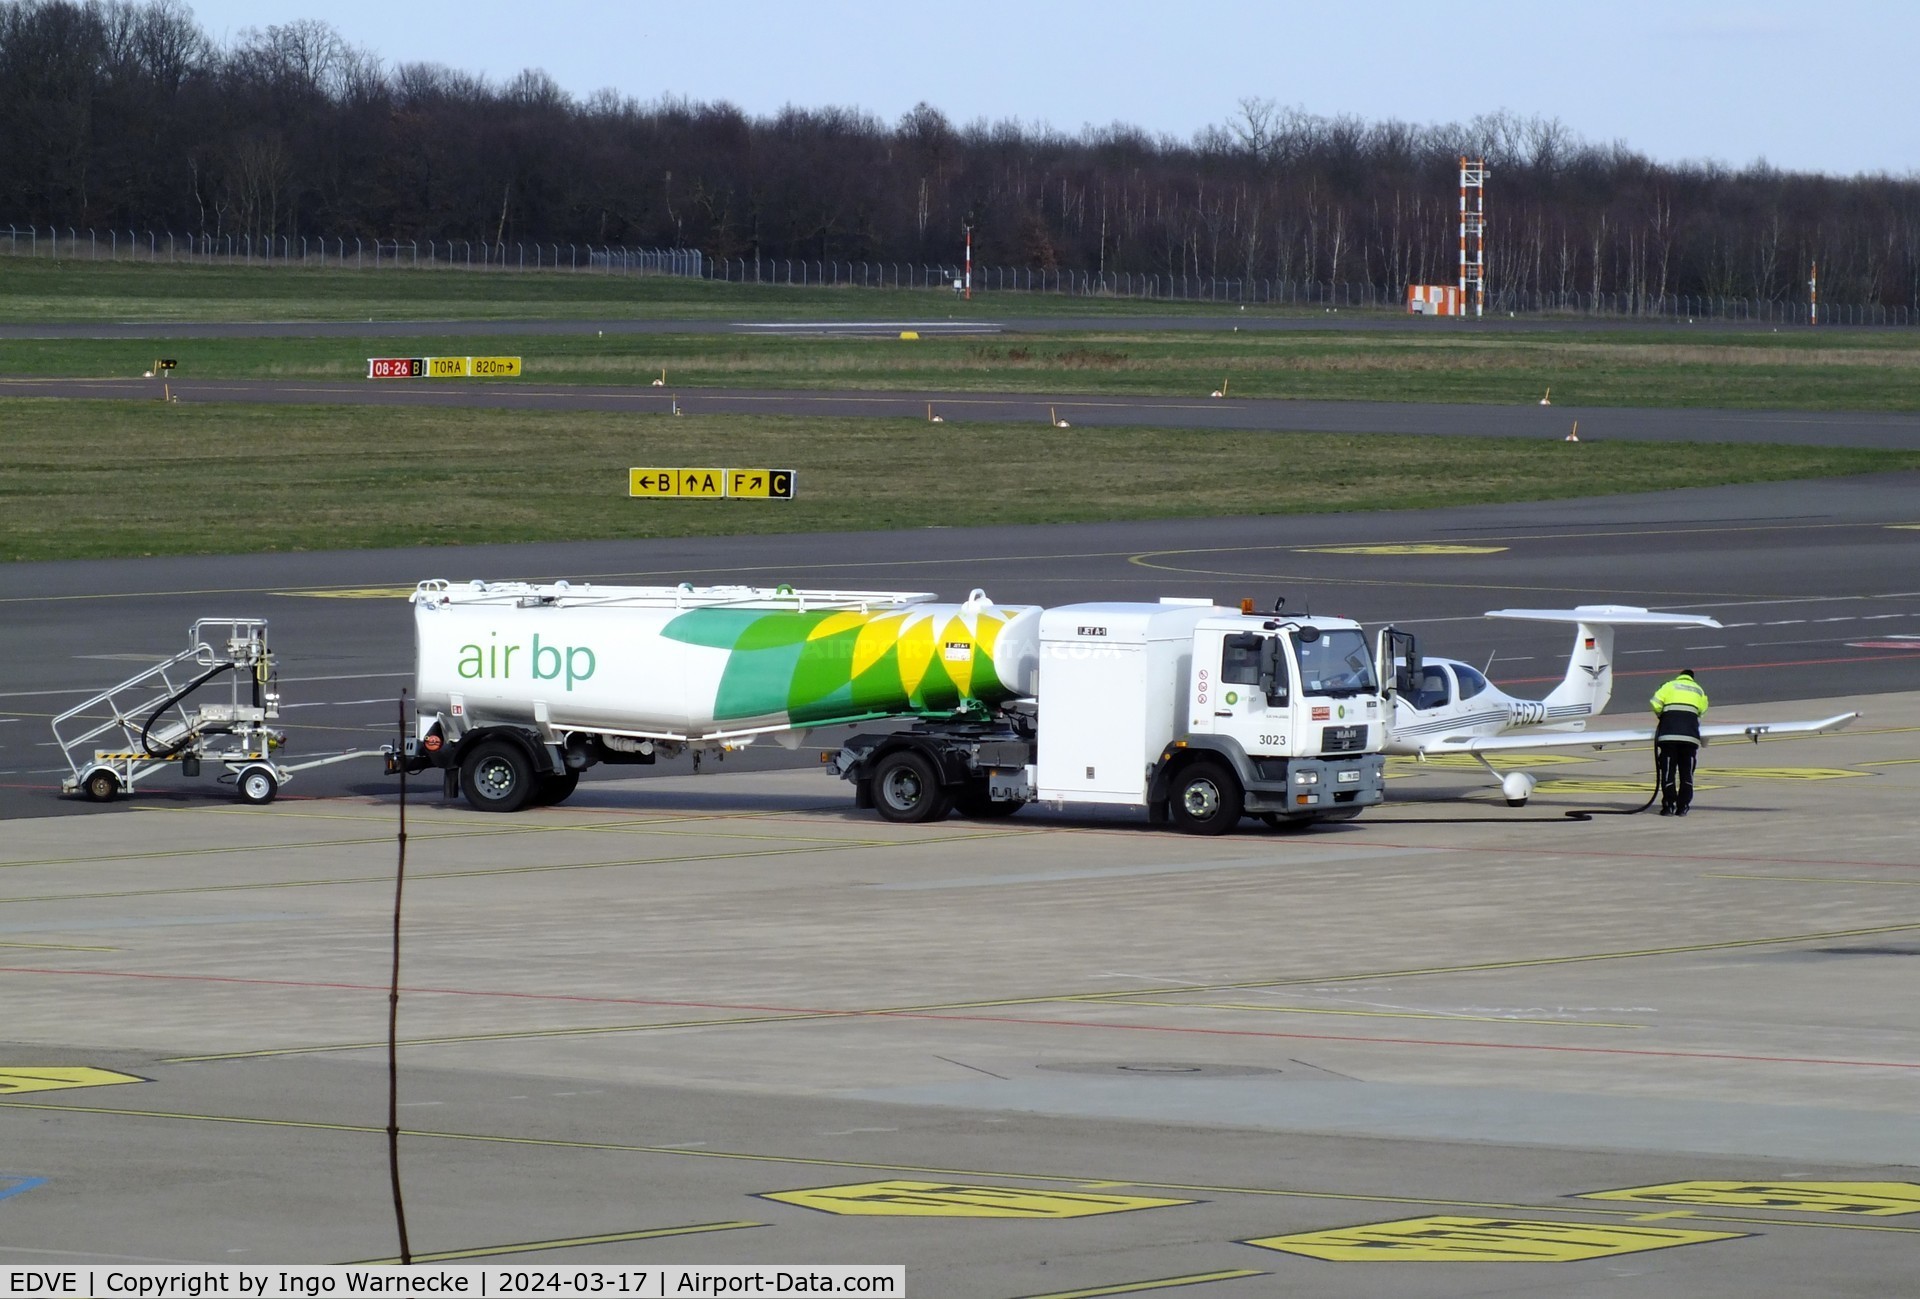 Braunschweig-Wolfsburg Regional Airport, Braunschweig, Lower Saxony Germany (EDVE) - big airport fuel truck refuelling small aircraft at Braunschweig/Wolfsburg airport, BS/Waggum